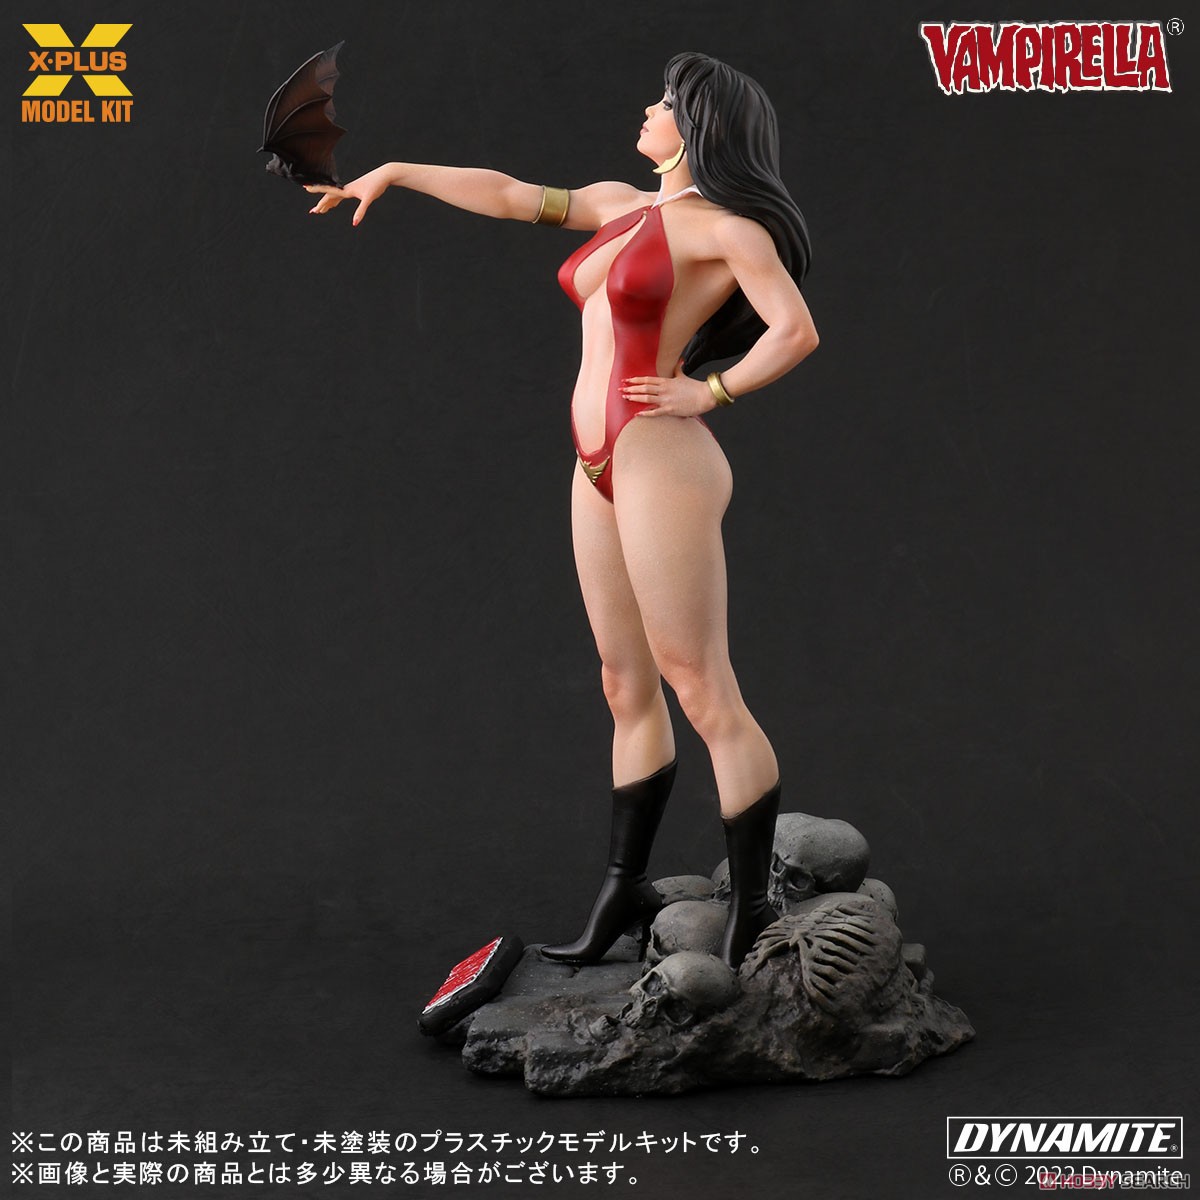 Vampirella『ヴァンピレラ ホセ・ゴンザレス エディション 』1/8スケール プラスチック モデルキット-004